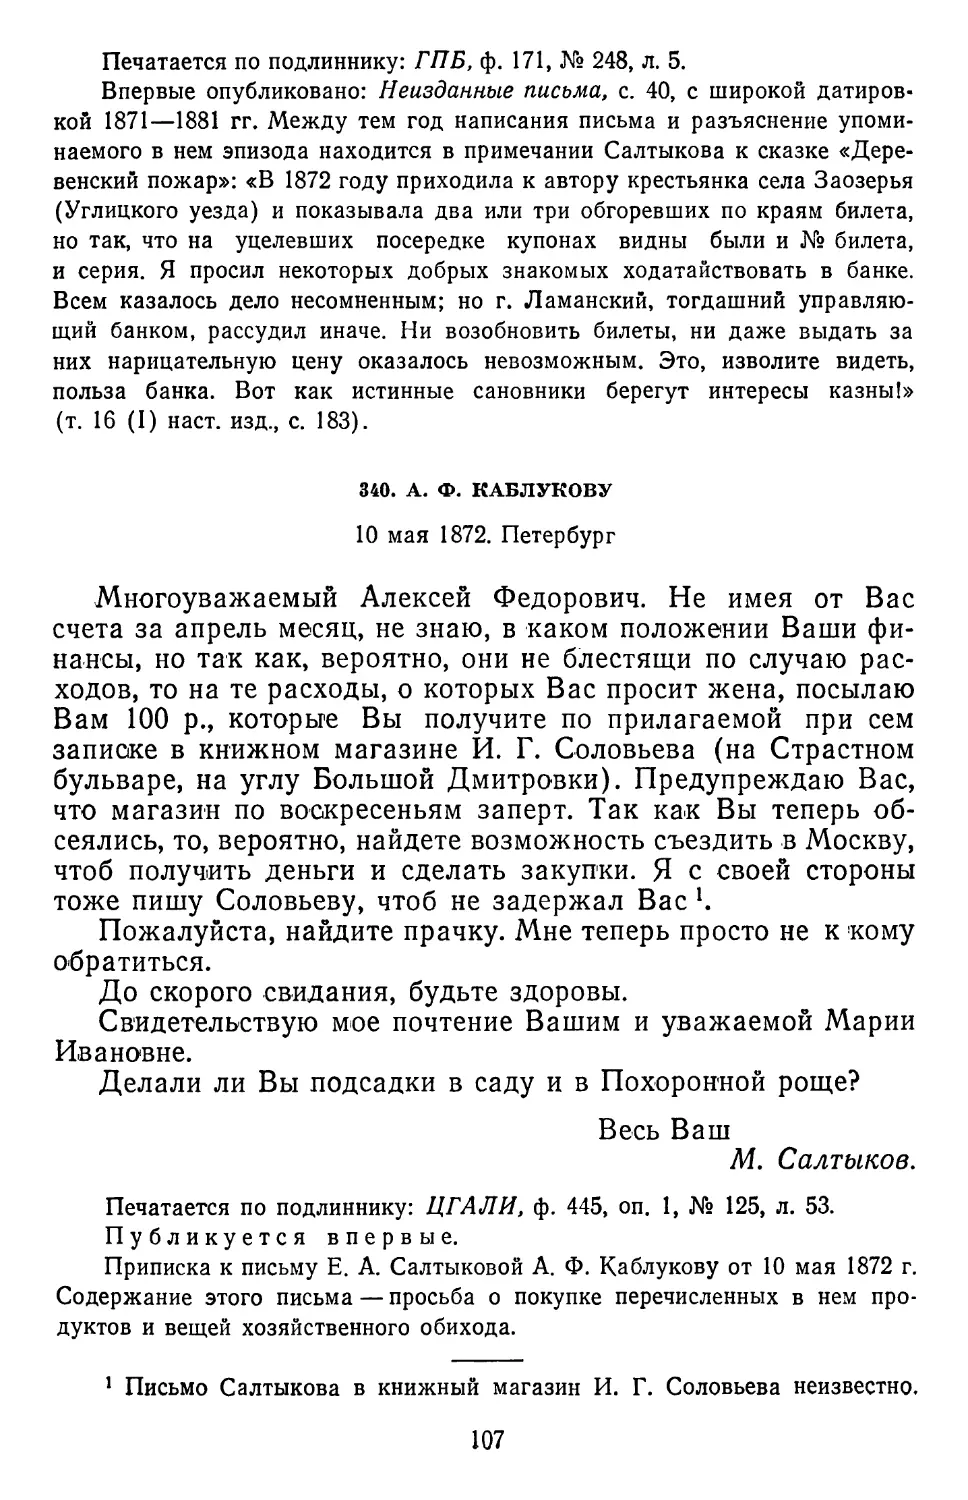 340.А. Ф. Каблукову. 10 мая 1872. Петербург ....